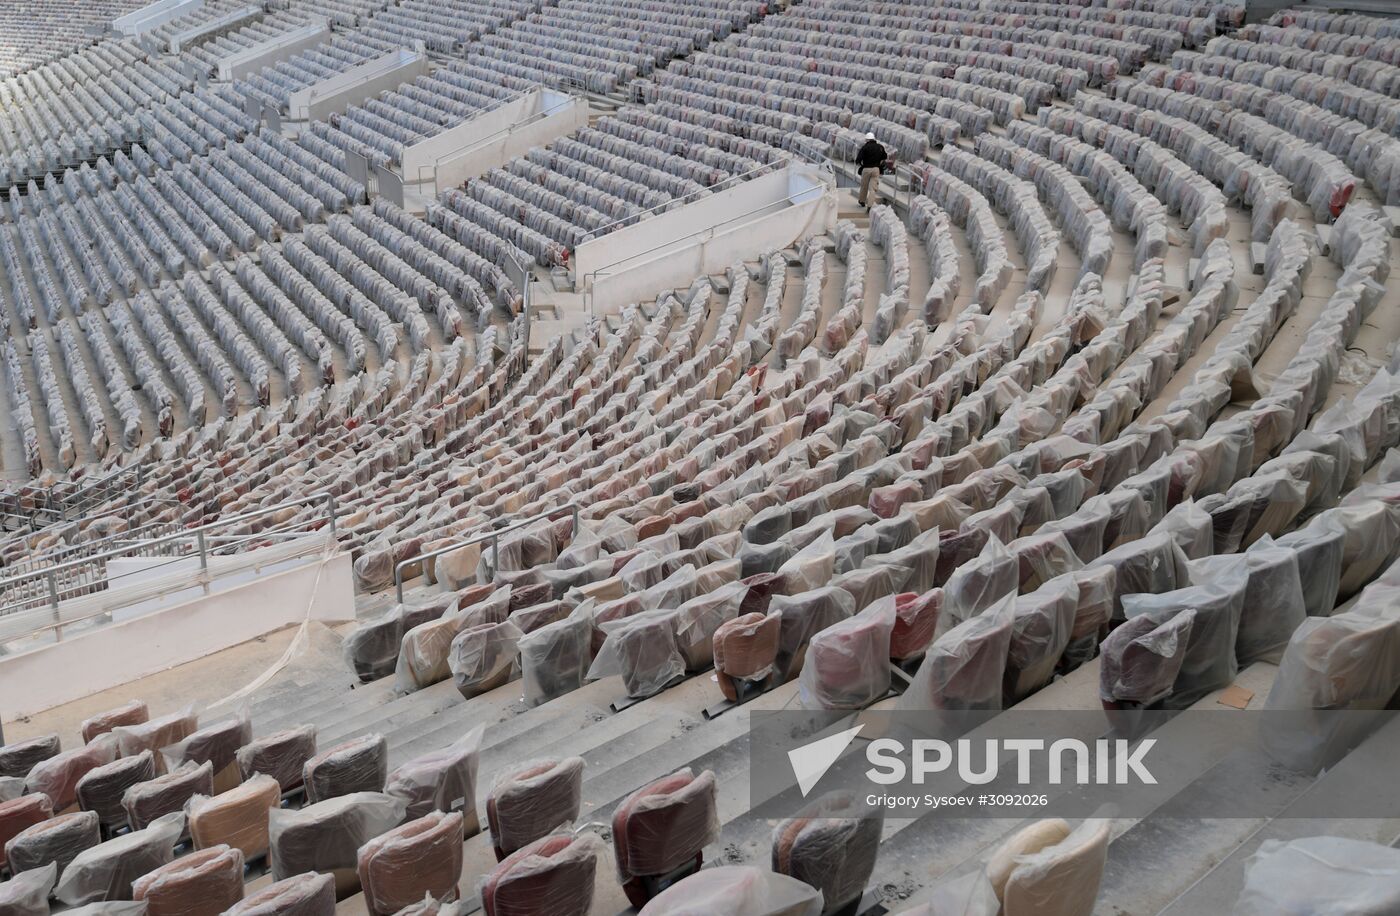 Luzhniki Grand Sports Arena under renovation